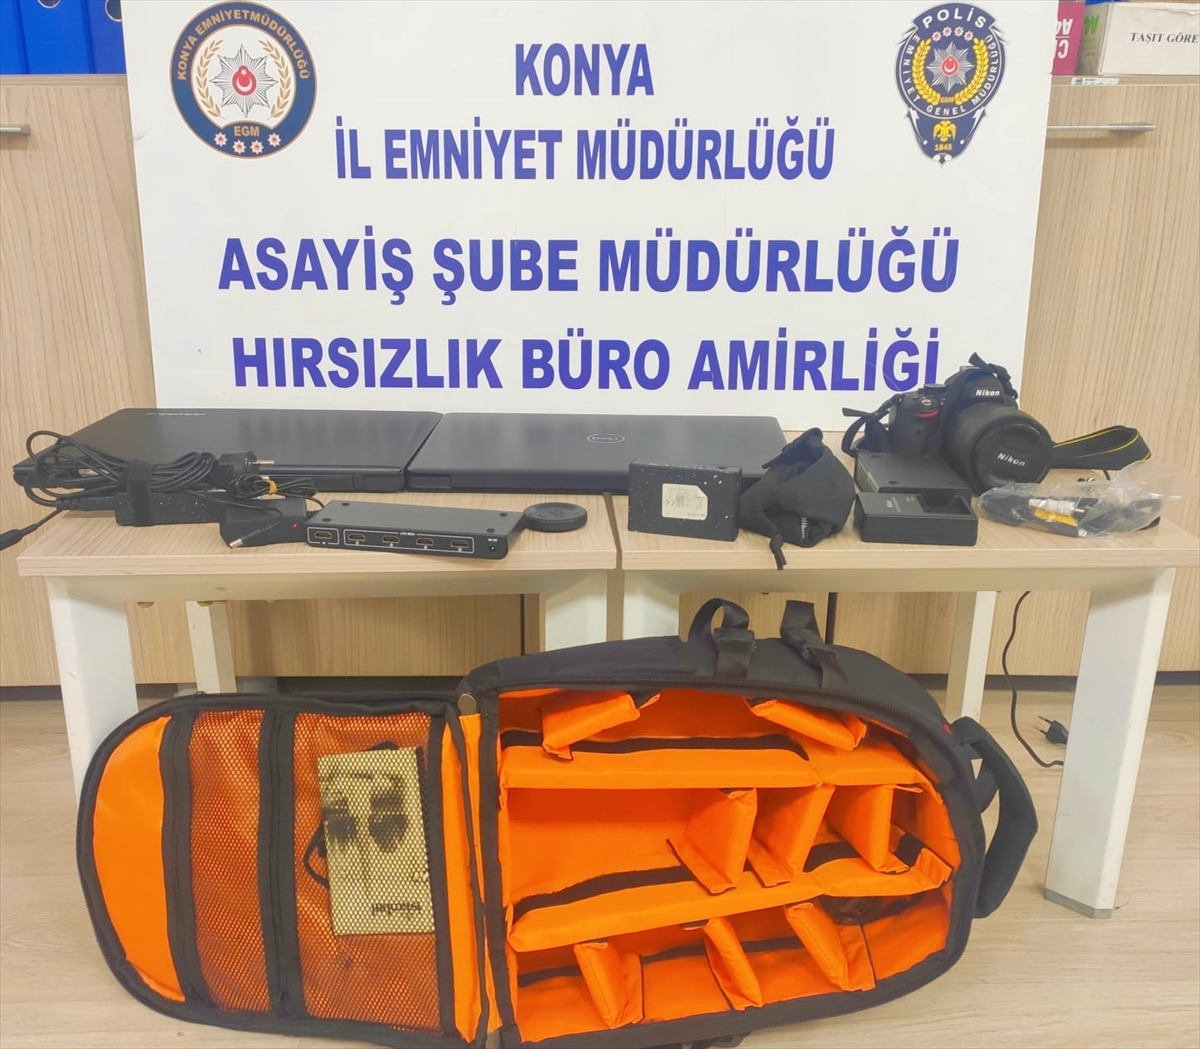 Konya'da okuldan çaldığı elektronik eşyaları satan 3 zanlı tutuklandı